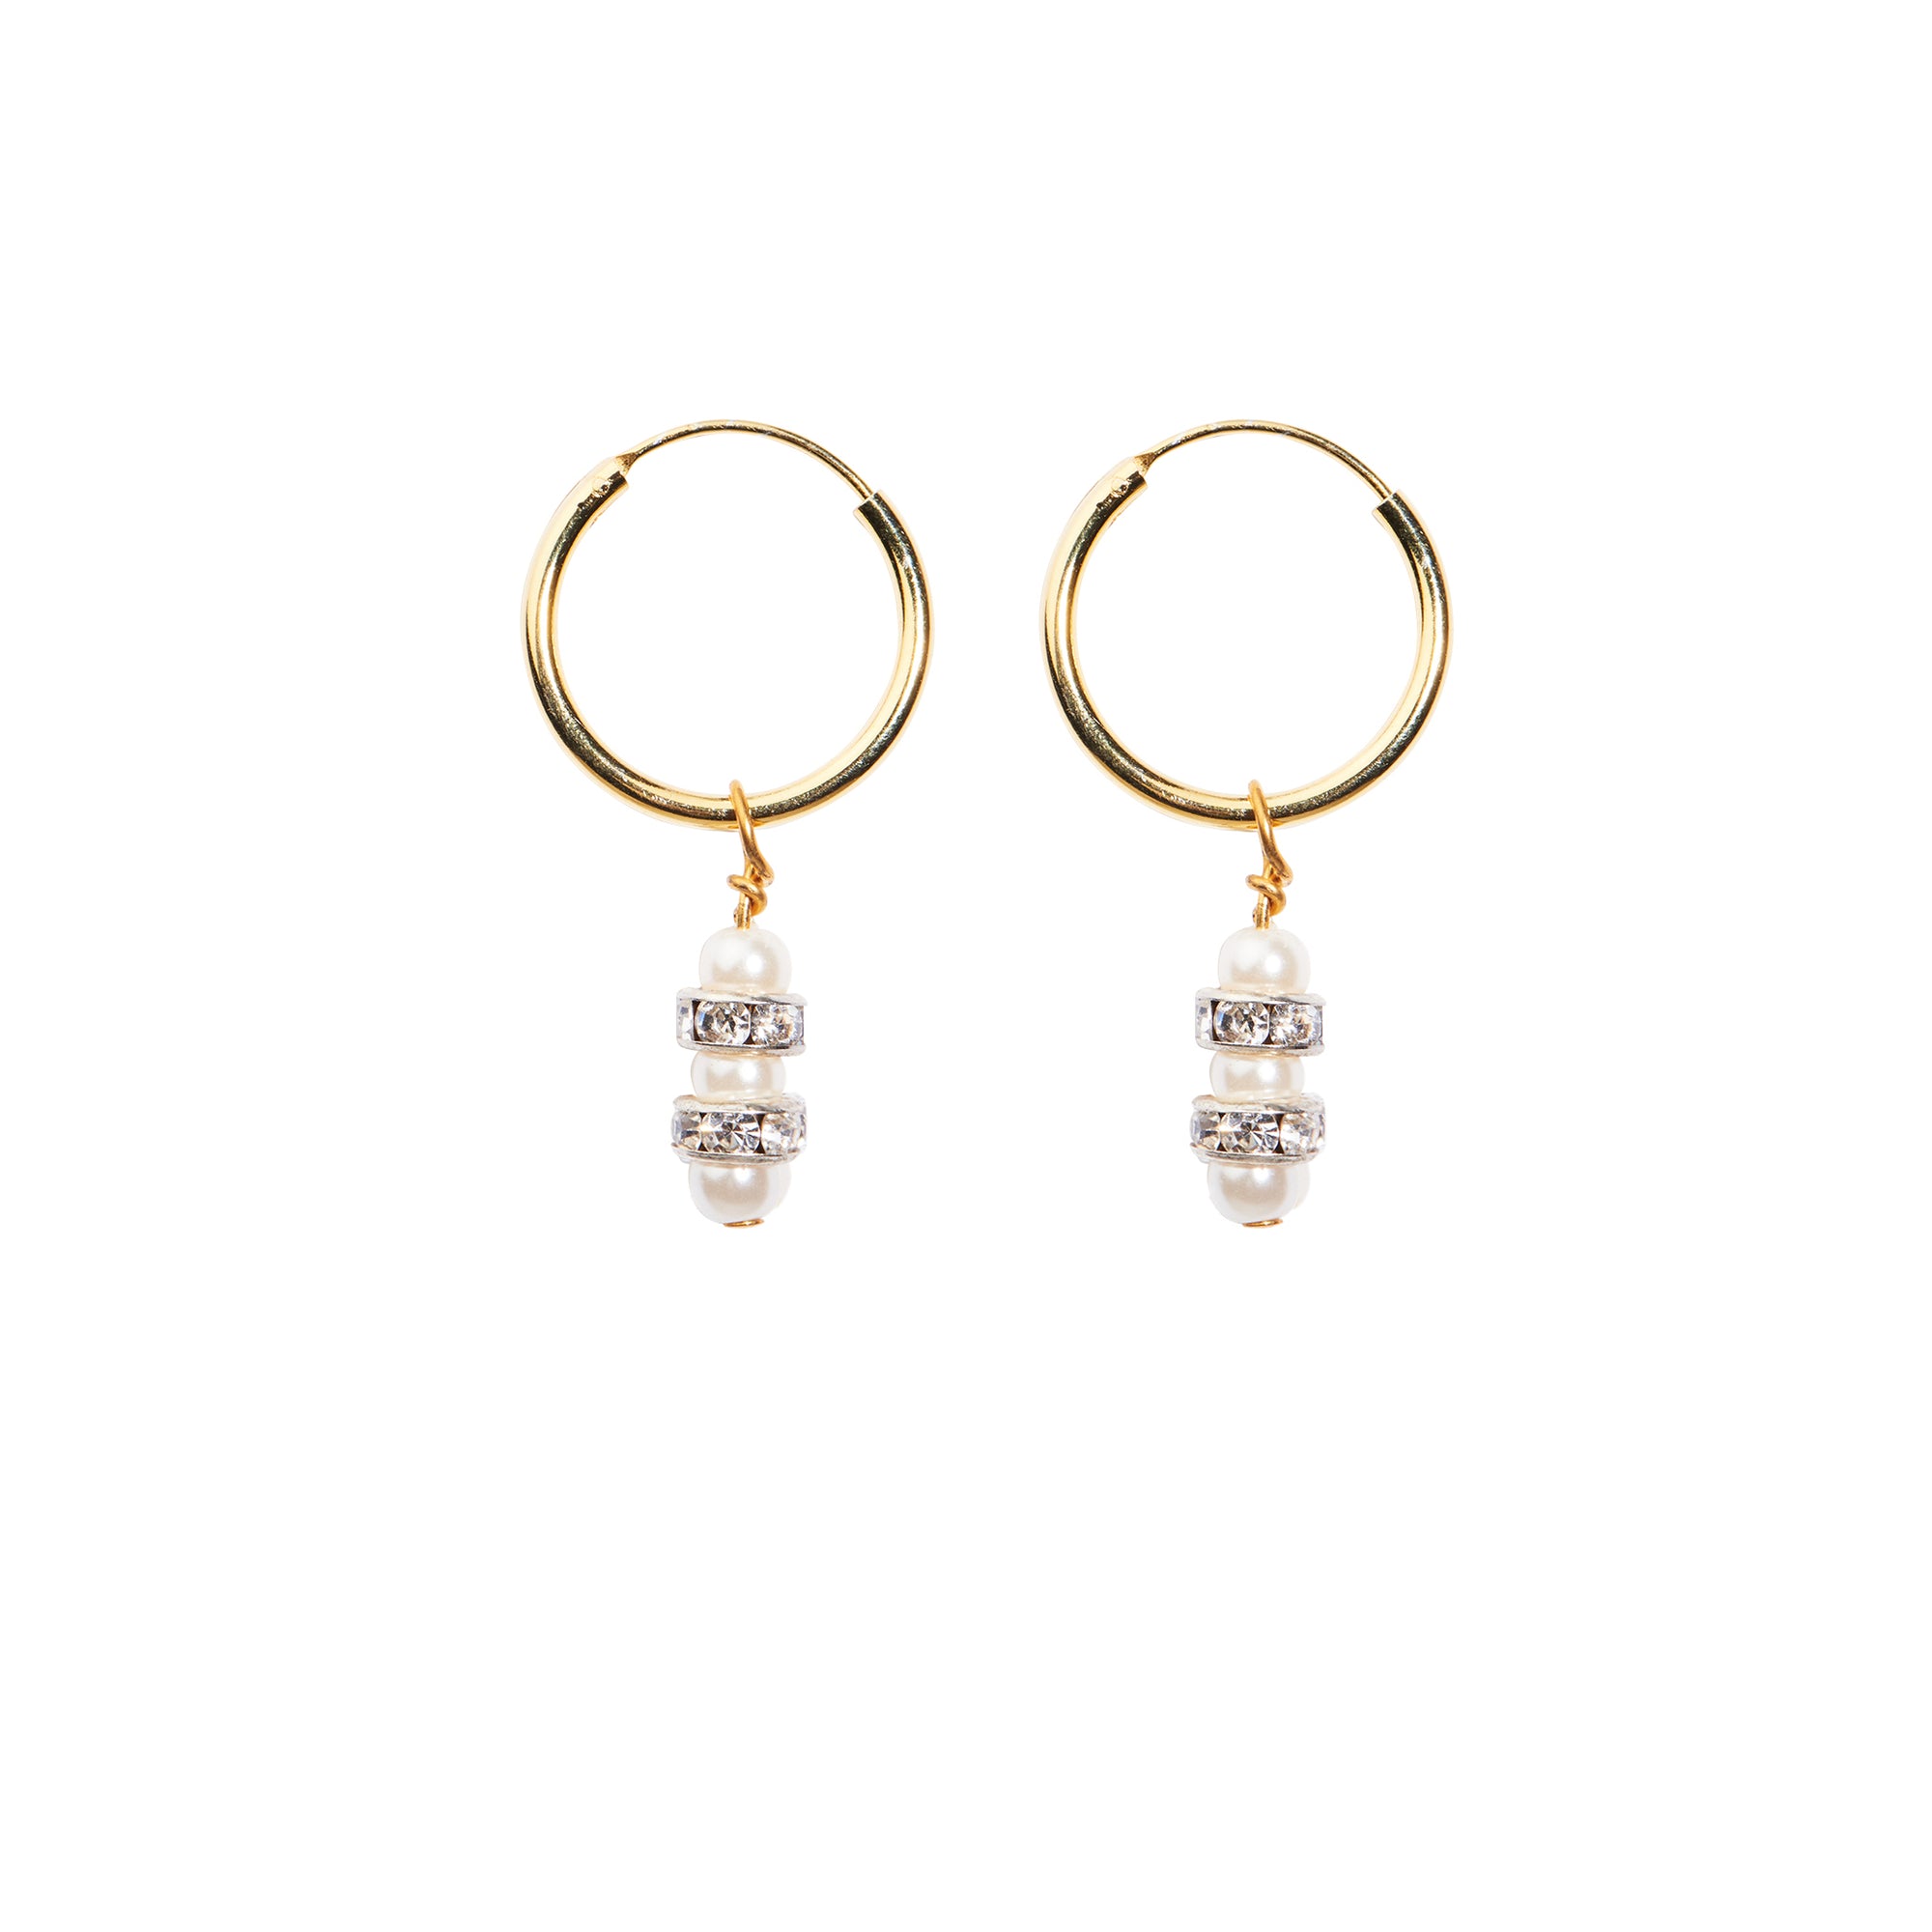 Bottega Veneta® Women's Small Drop Earrings in Yellow gold. Shop online now.